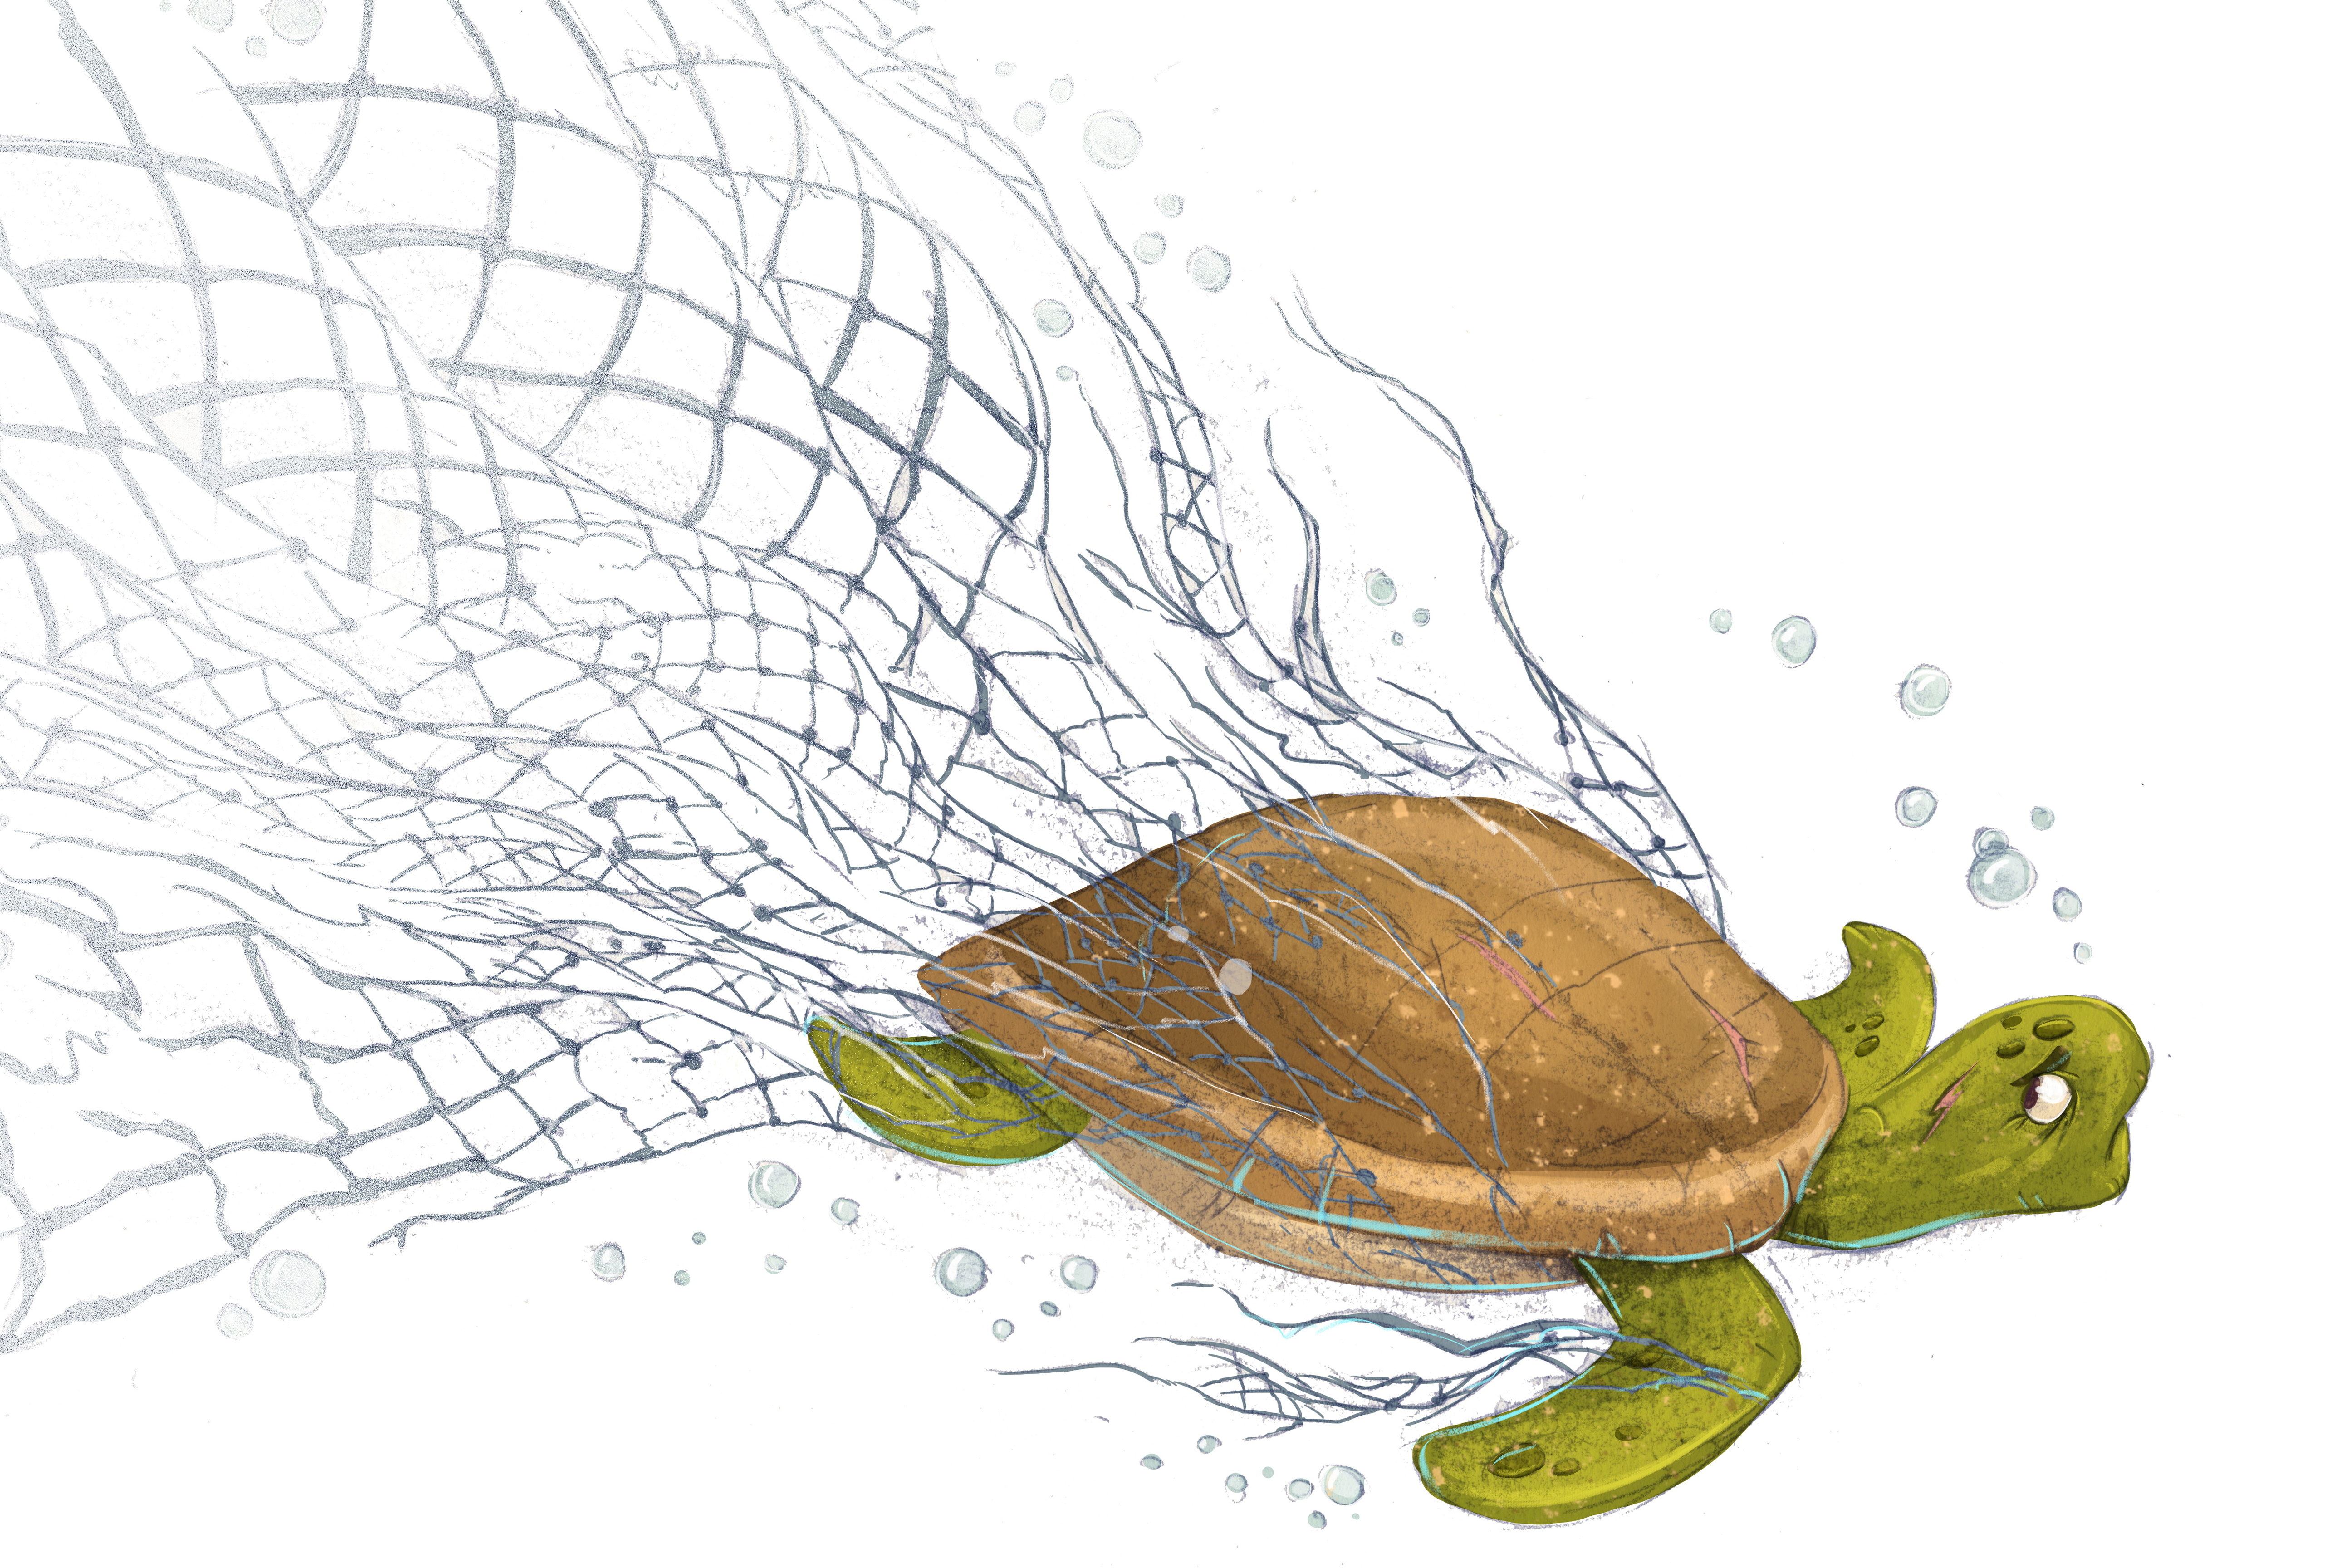 L'importanza del centro recupero tartarughe a Linosa 